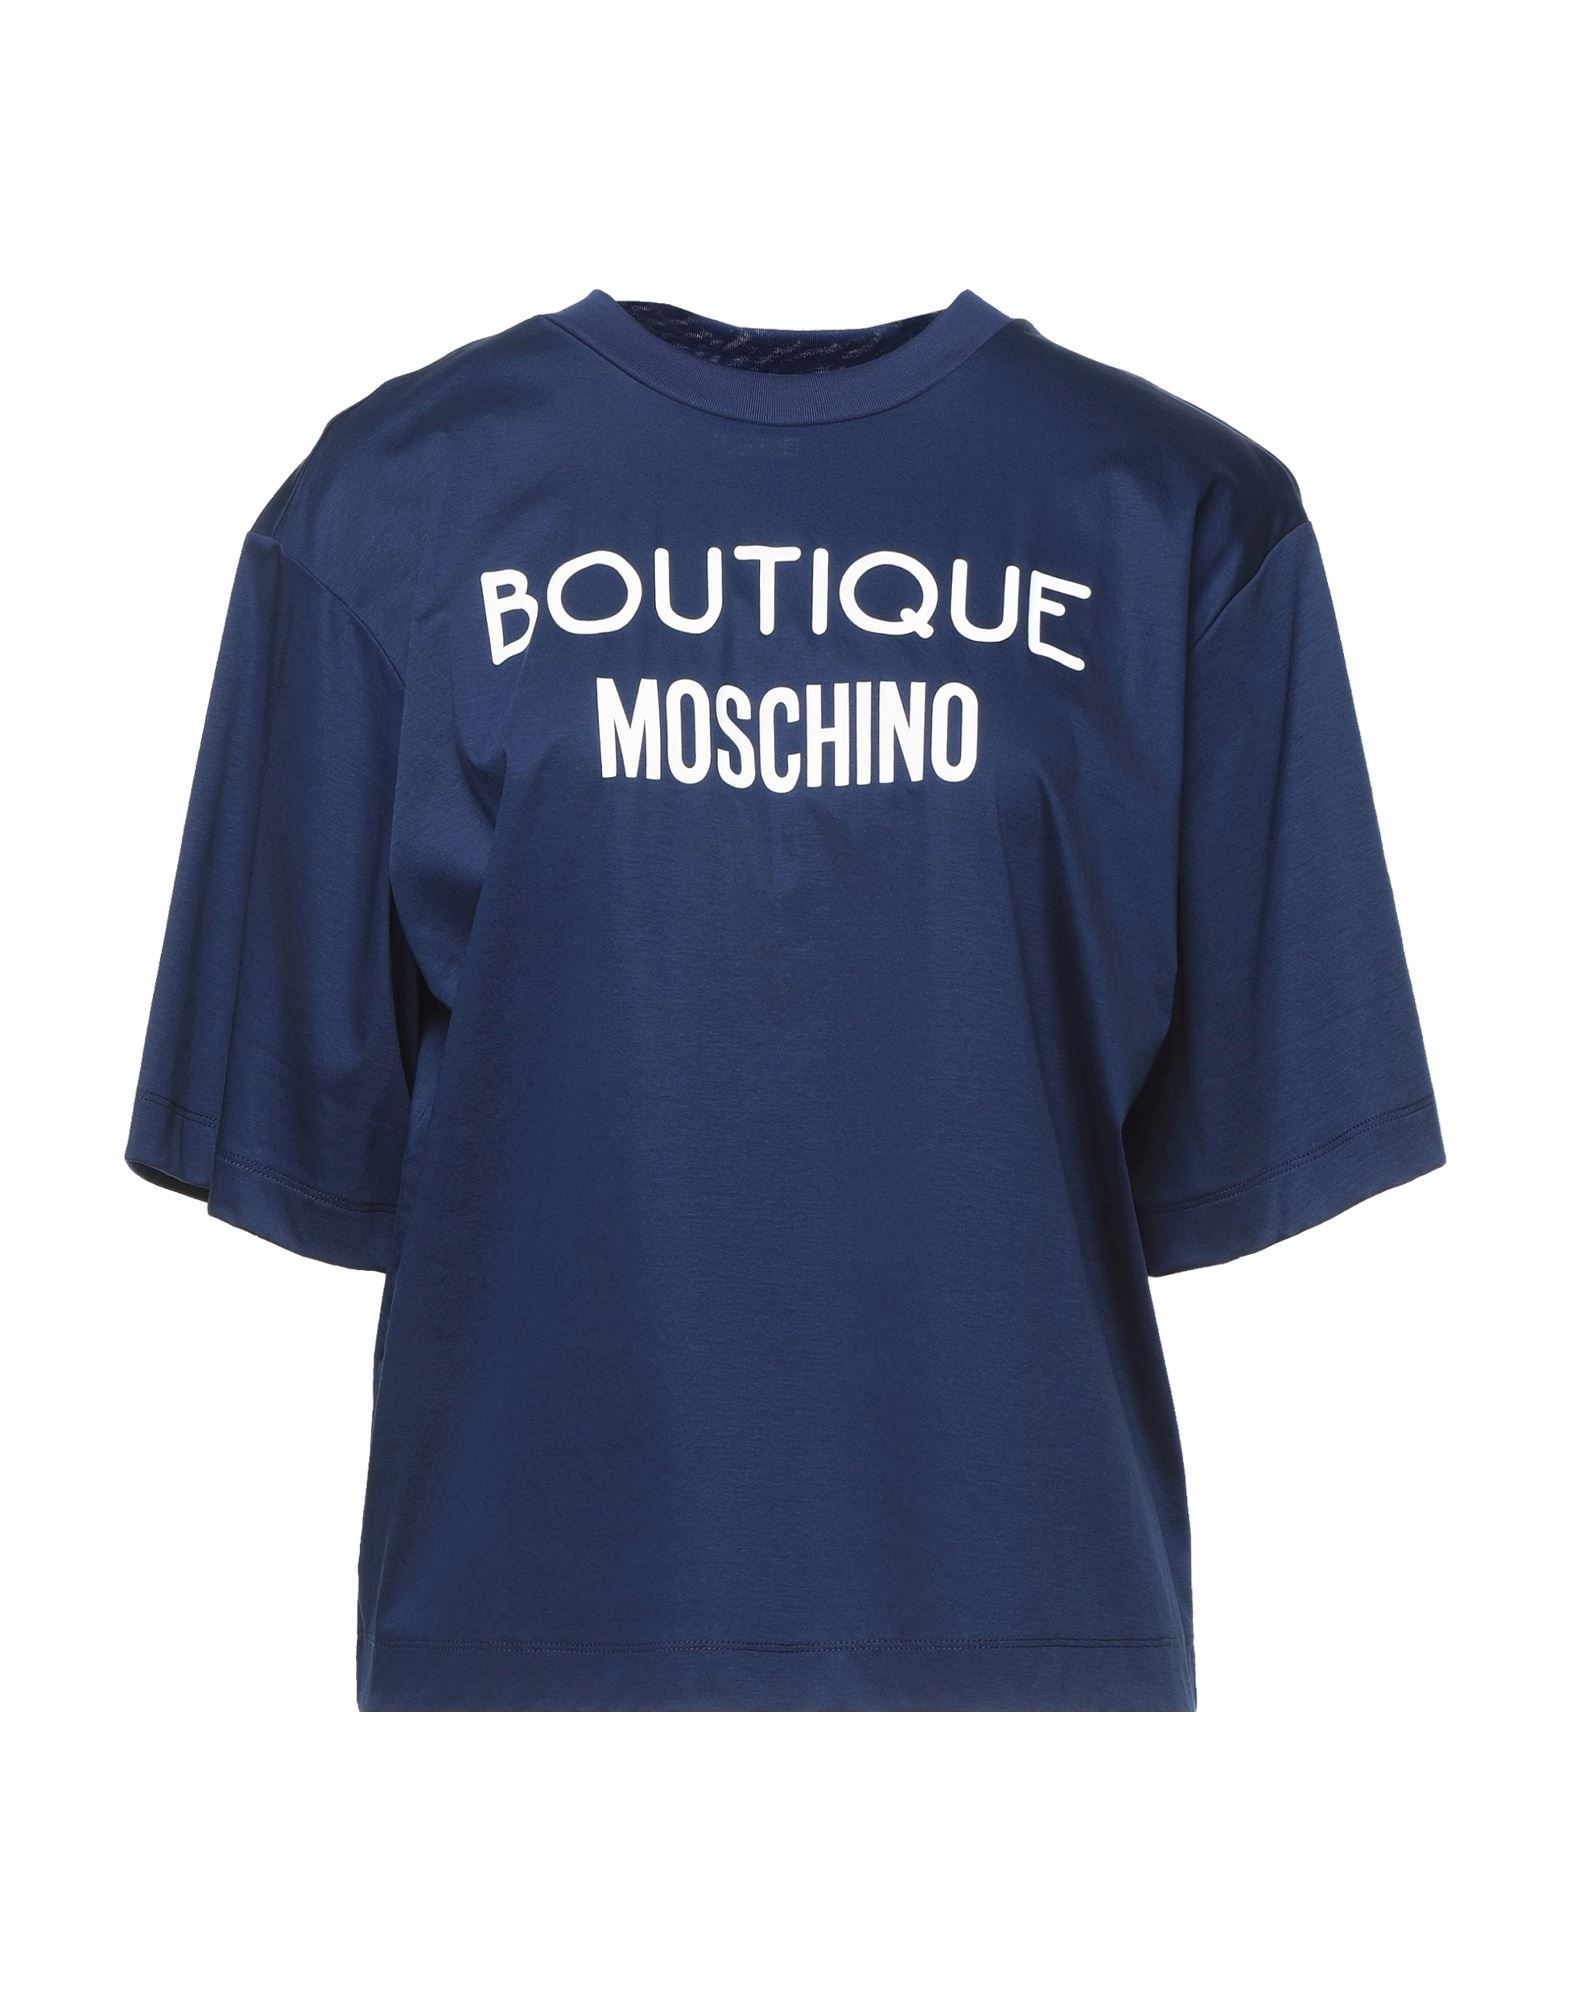 BOUTIQUE MOSCHINO T-shirts Damen Nachtblau von BOUTIQUE MOSCHINO